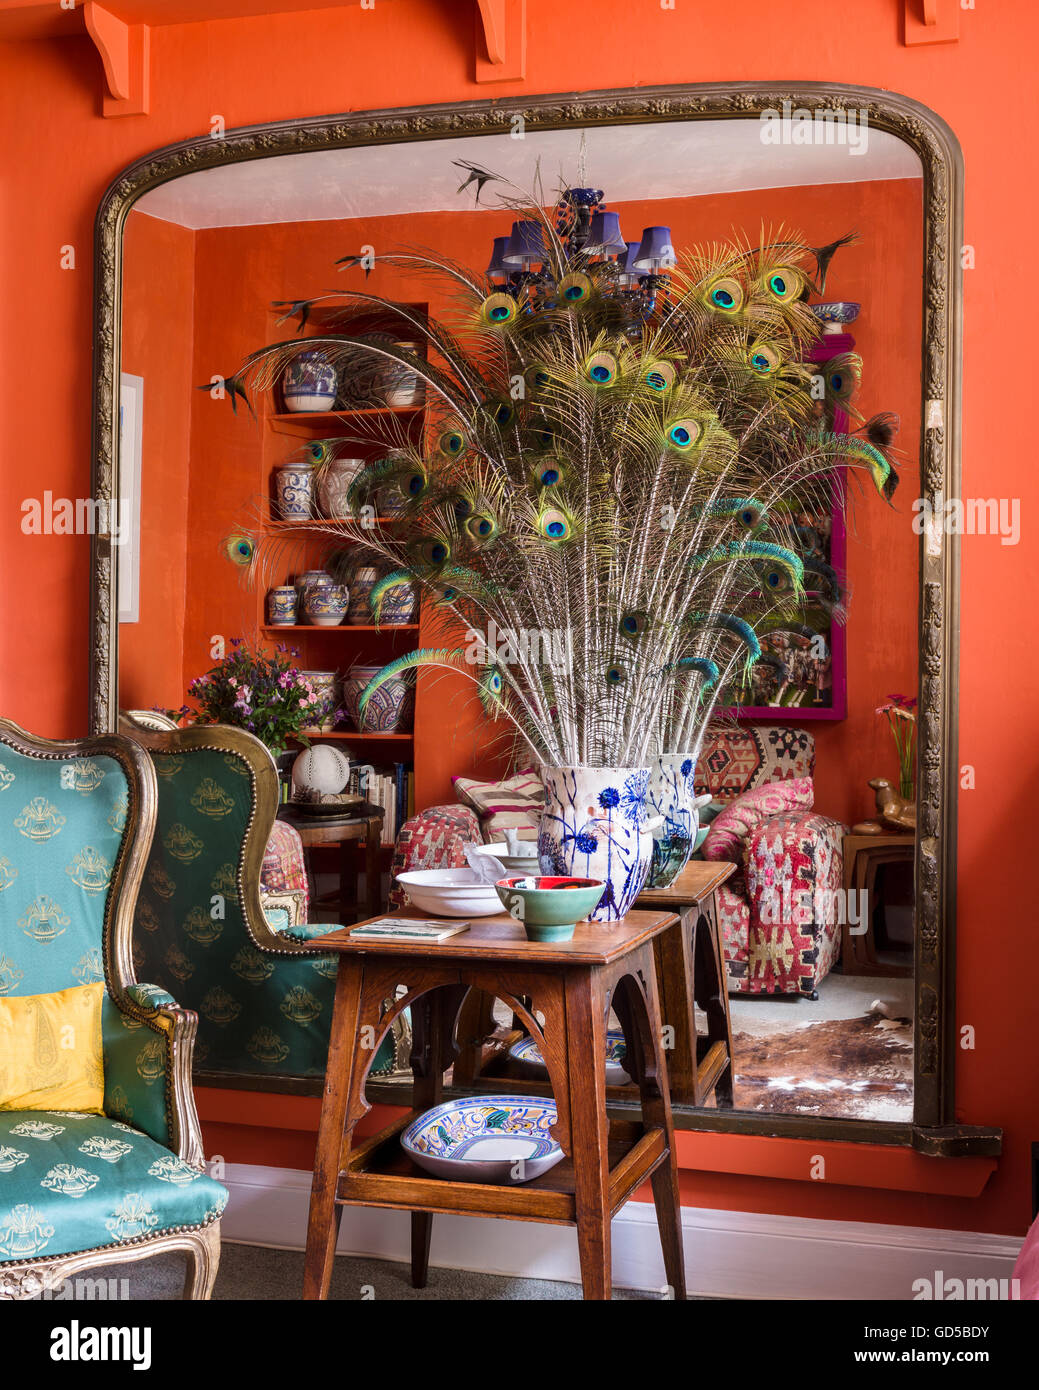 Vase de plumes de paon sur table en bois avec grand miroir en toile de fond. La pièce est peinte dans Charlotte's Locks par Farrow & Ball. Banque D'Images